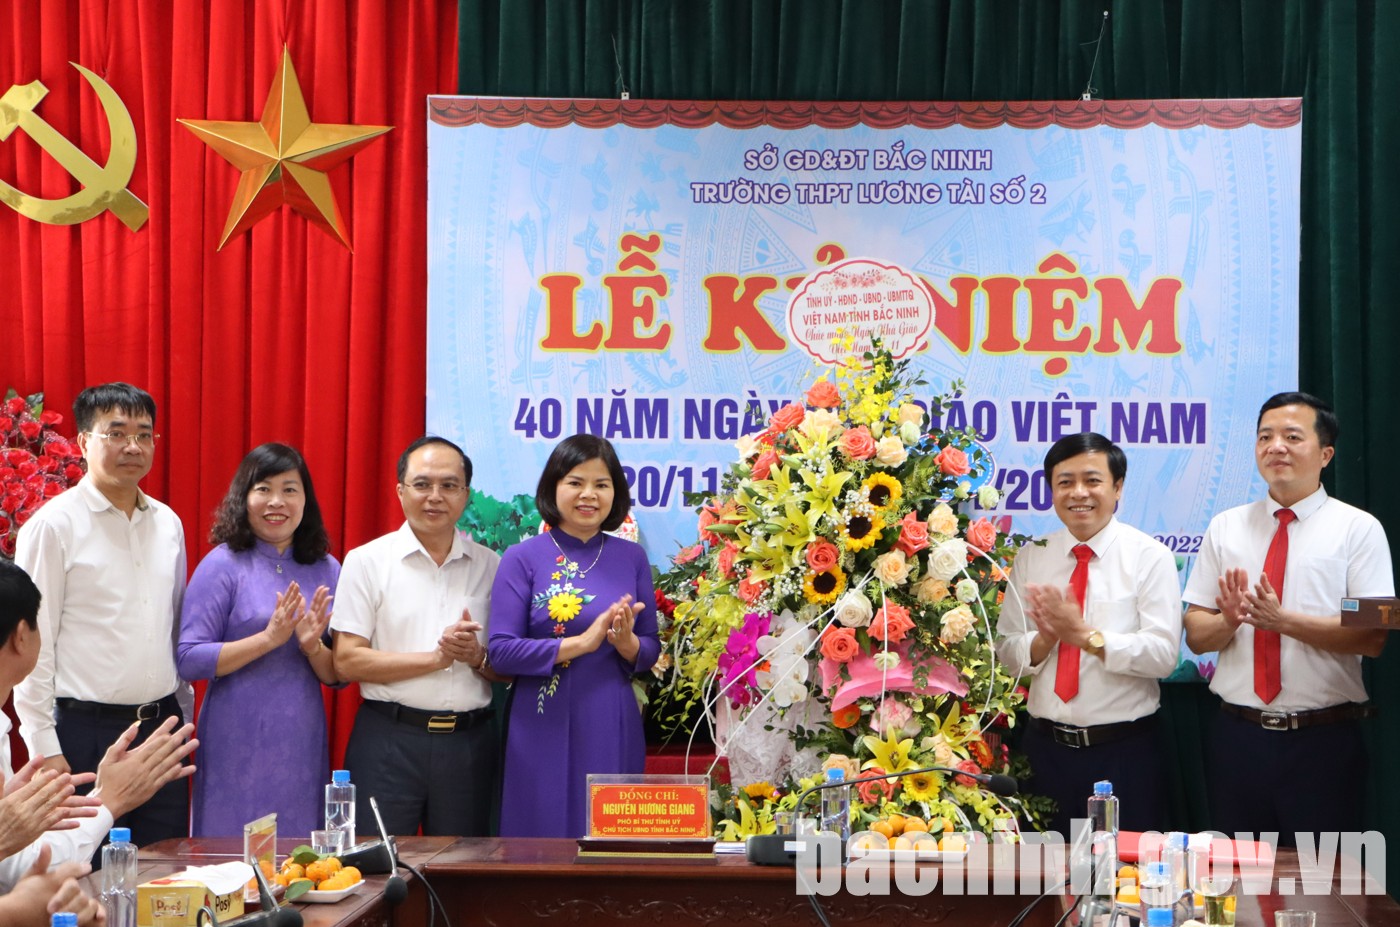 Chủ tịch UBND tỉnh Nguyễn Hương Giang chúc mừng Ngày Nhà giáo Việt Nam tại Trường THPT Lương Tài số 2